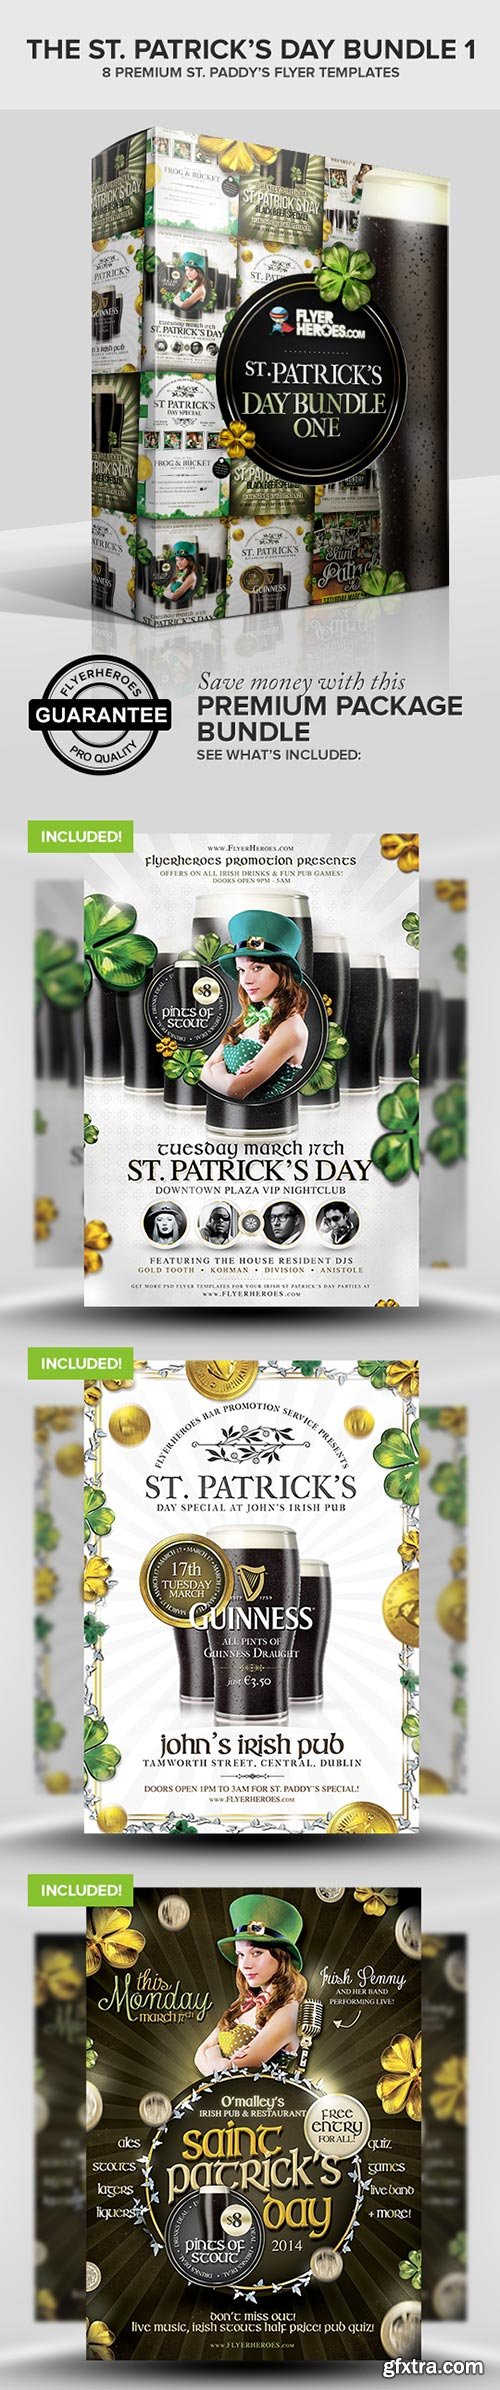 St. Patrick’s Day Bundle 1